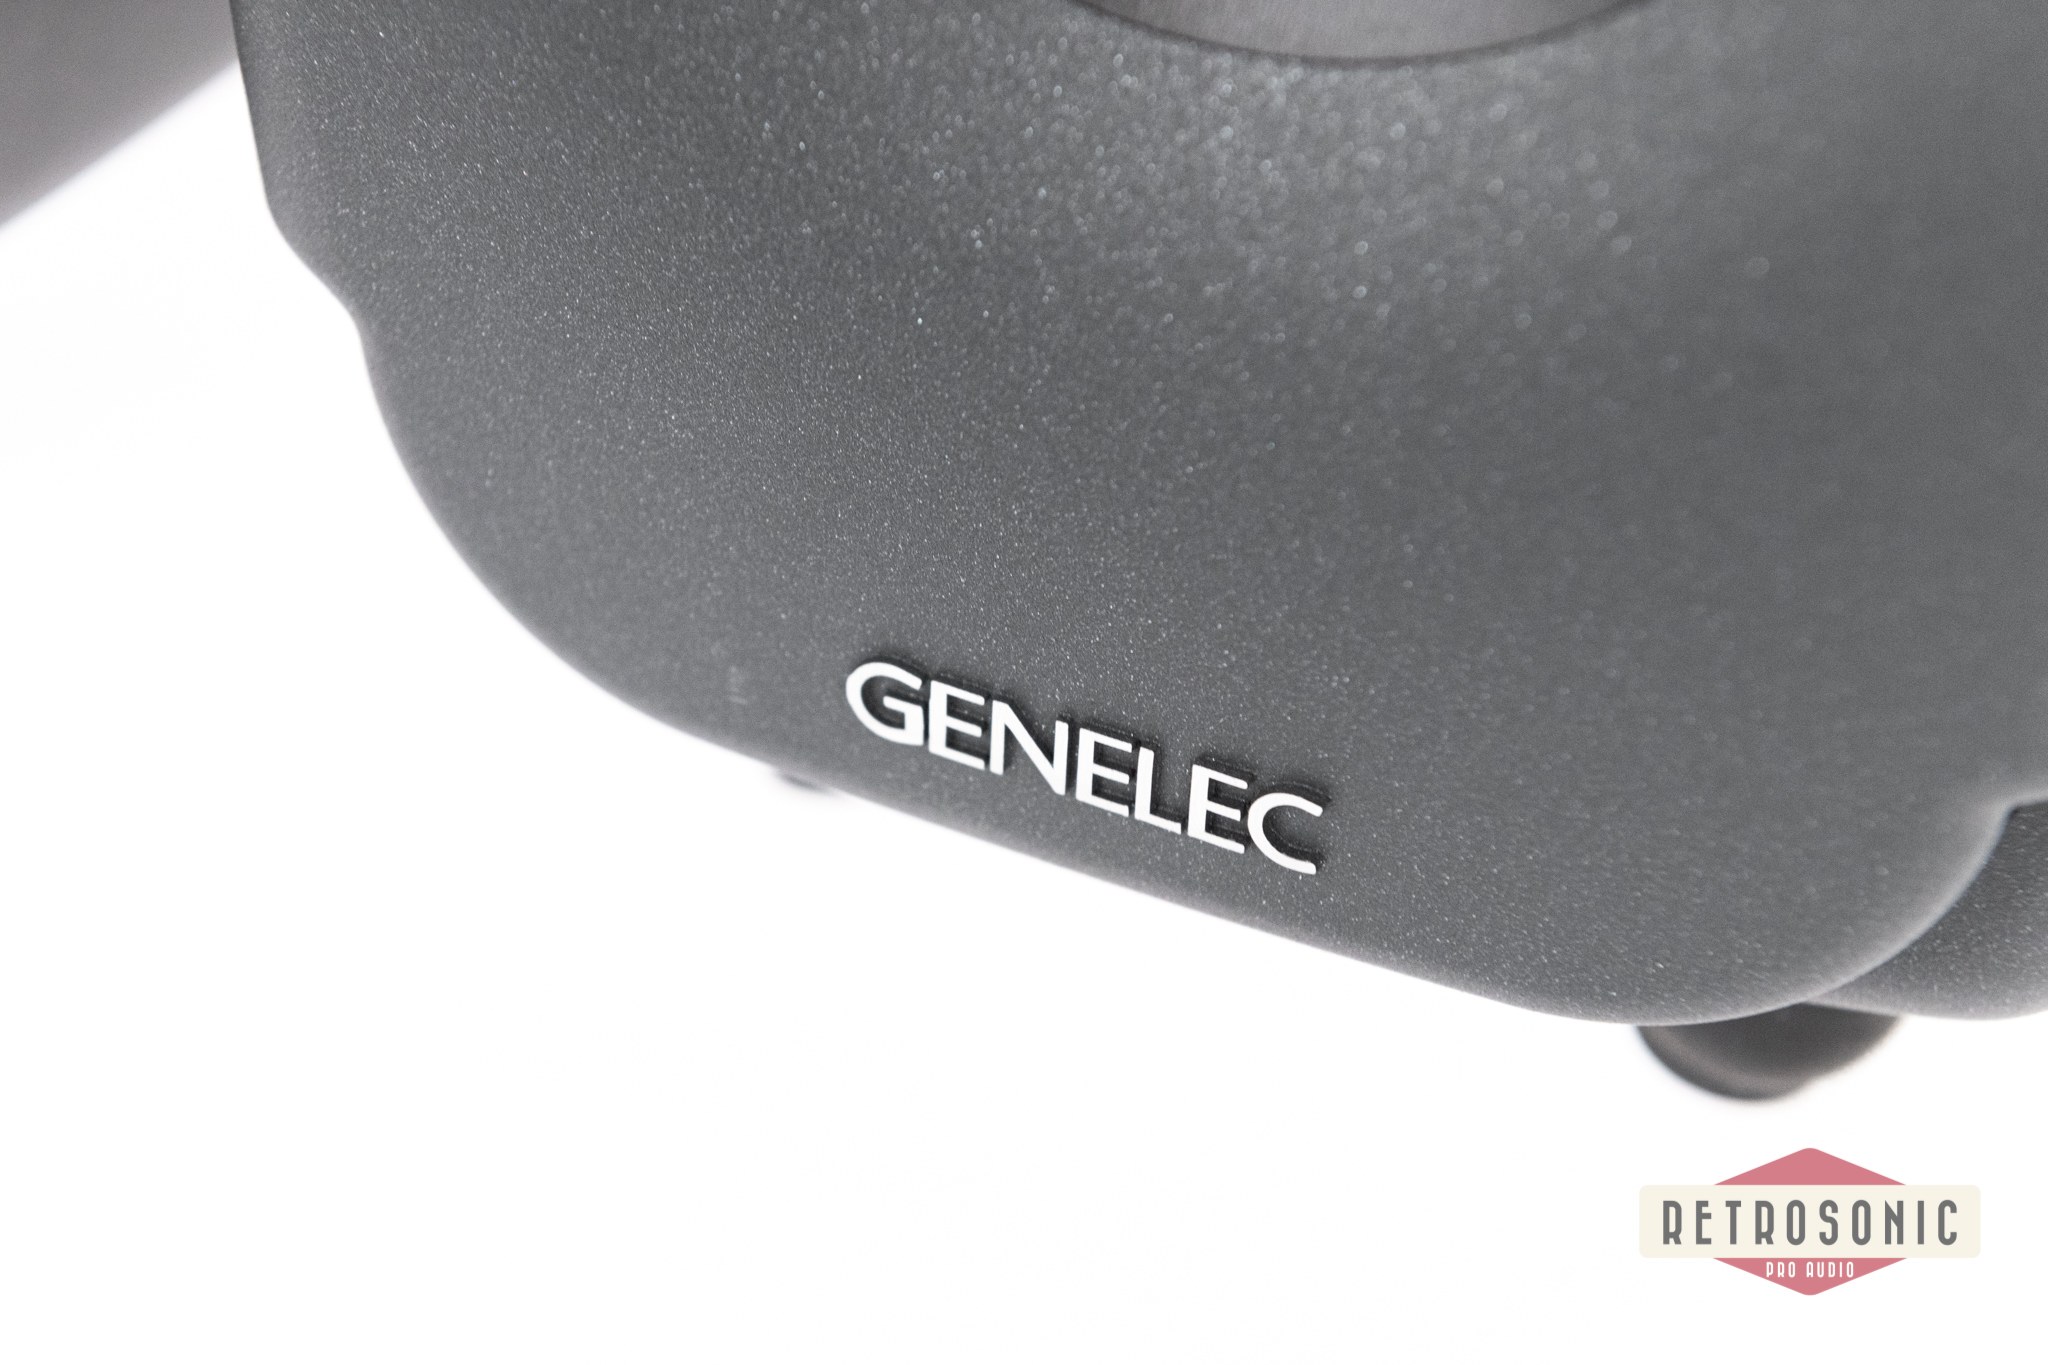 Genelec Monitor SAM 8331A dark grey